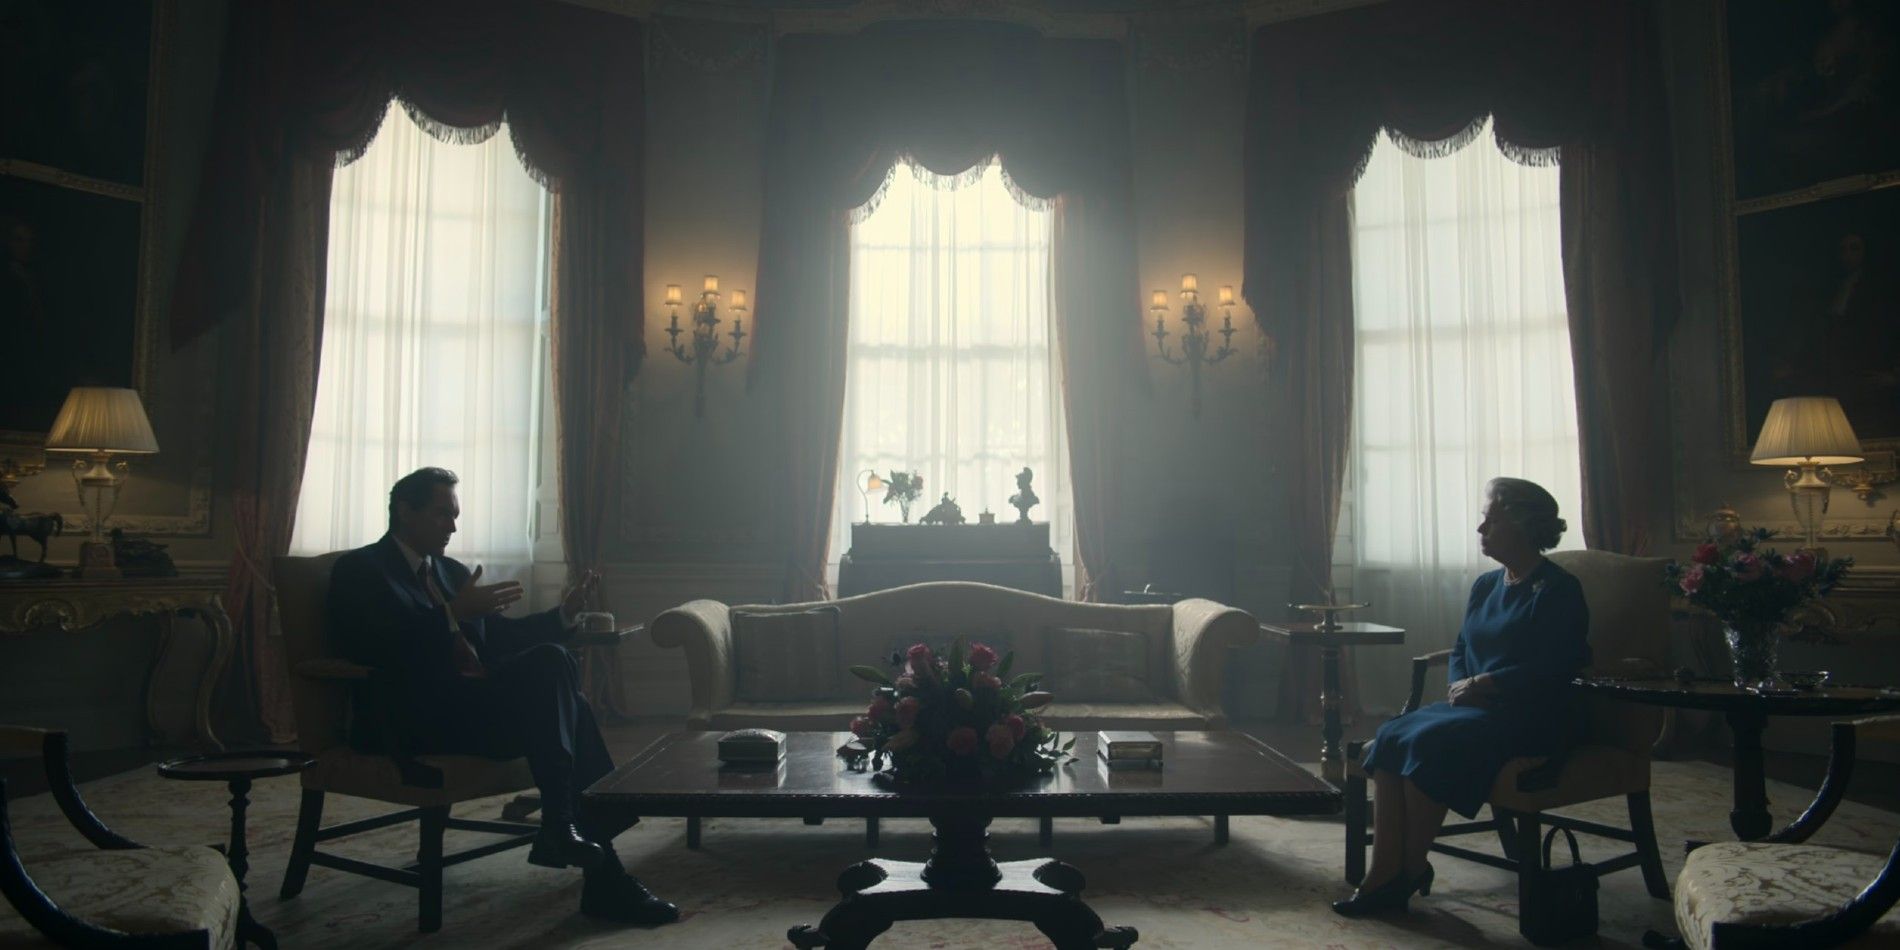 Tony Blair and Queen Elizabeth II sit across the room speaking in The Crown season 6